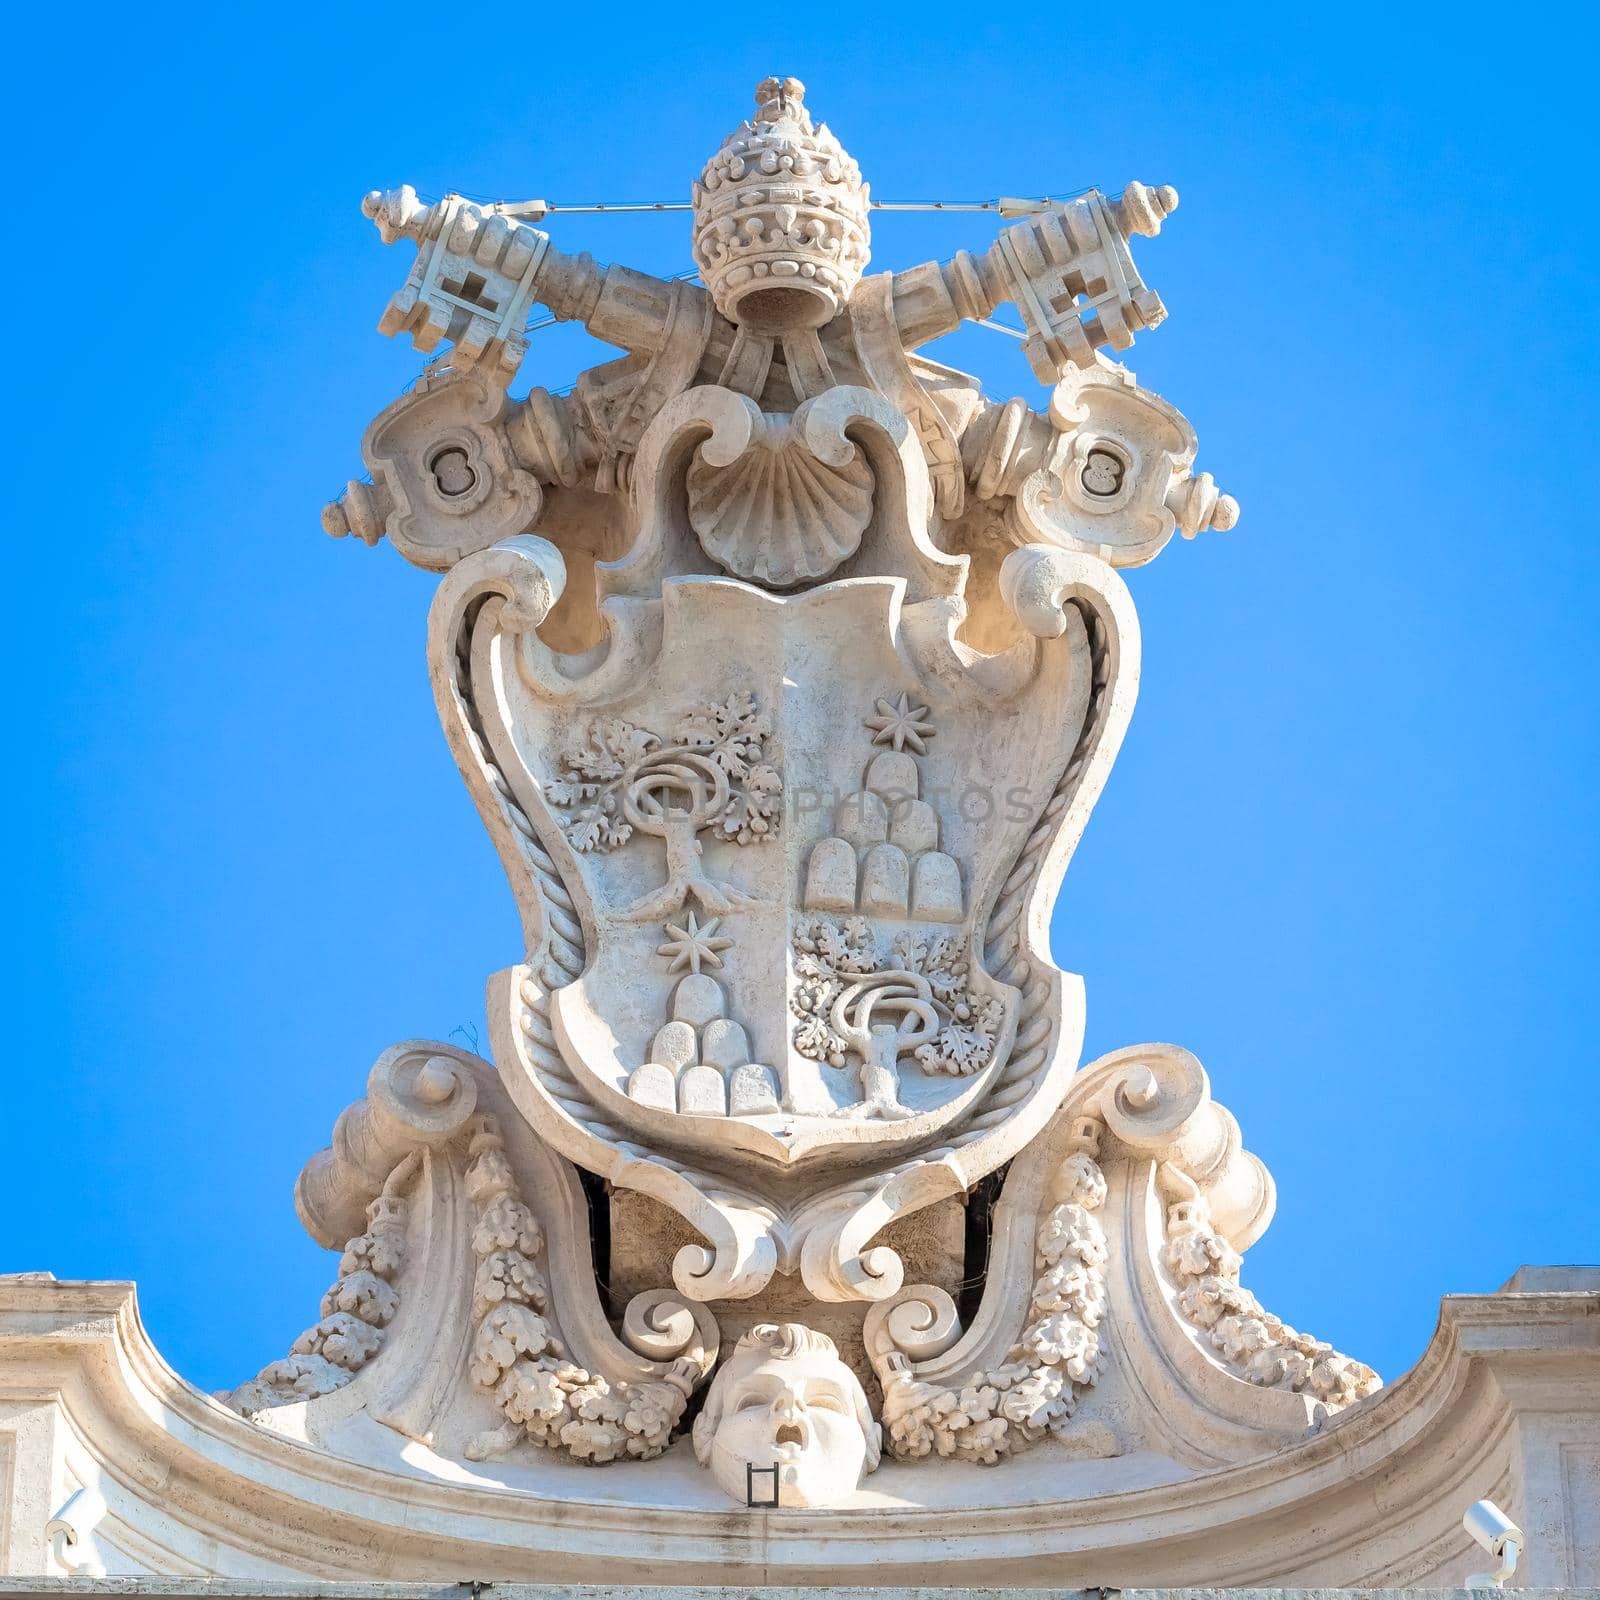 ROME, ITALY - CIRCA AUGUST 2020: antique Vatican symbol located in Saint Peter Square